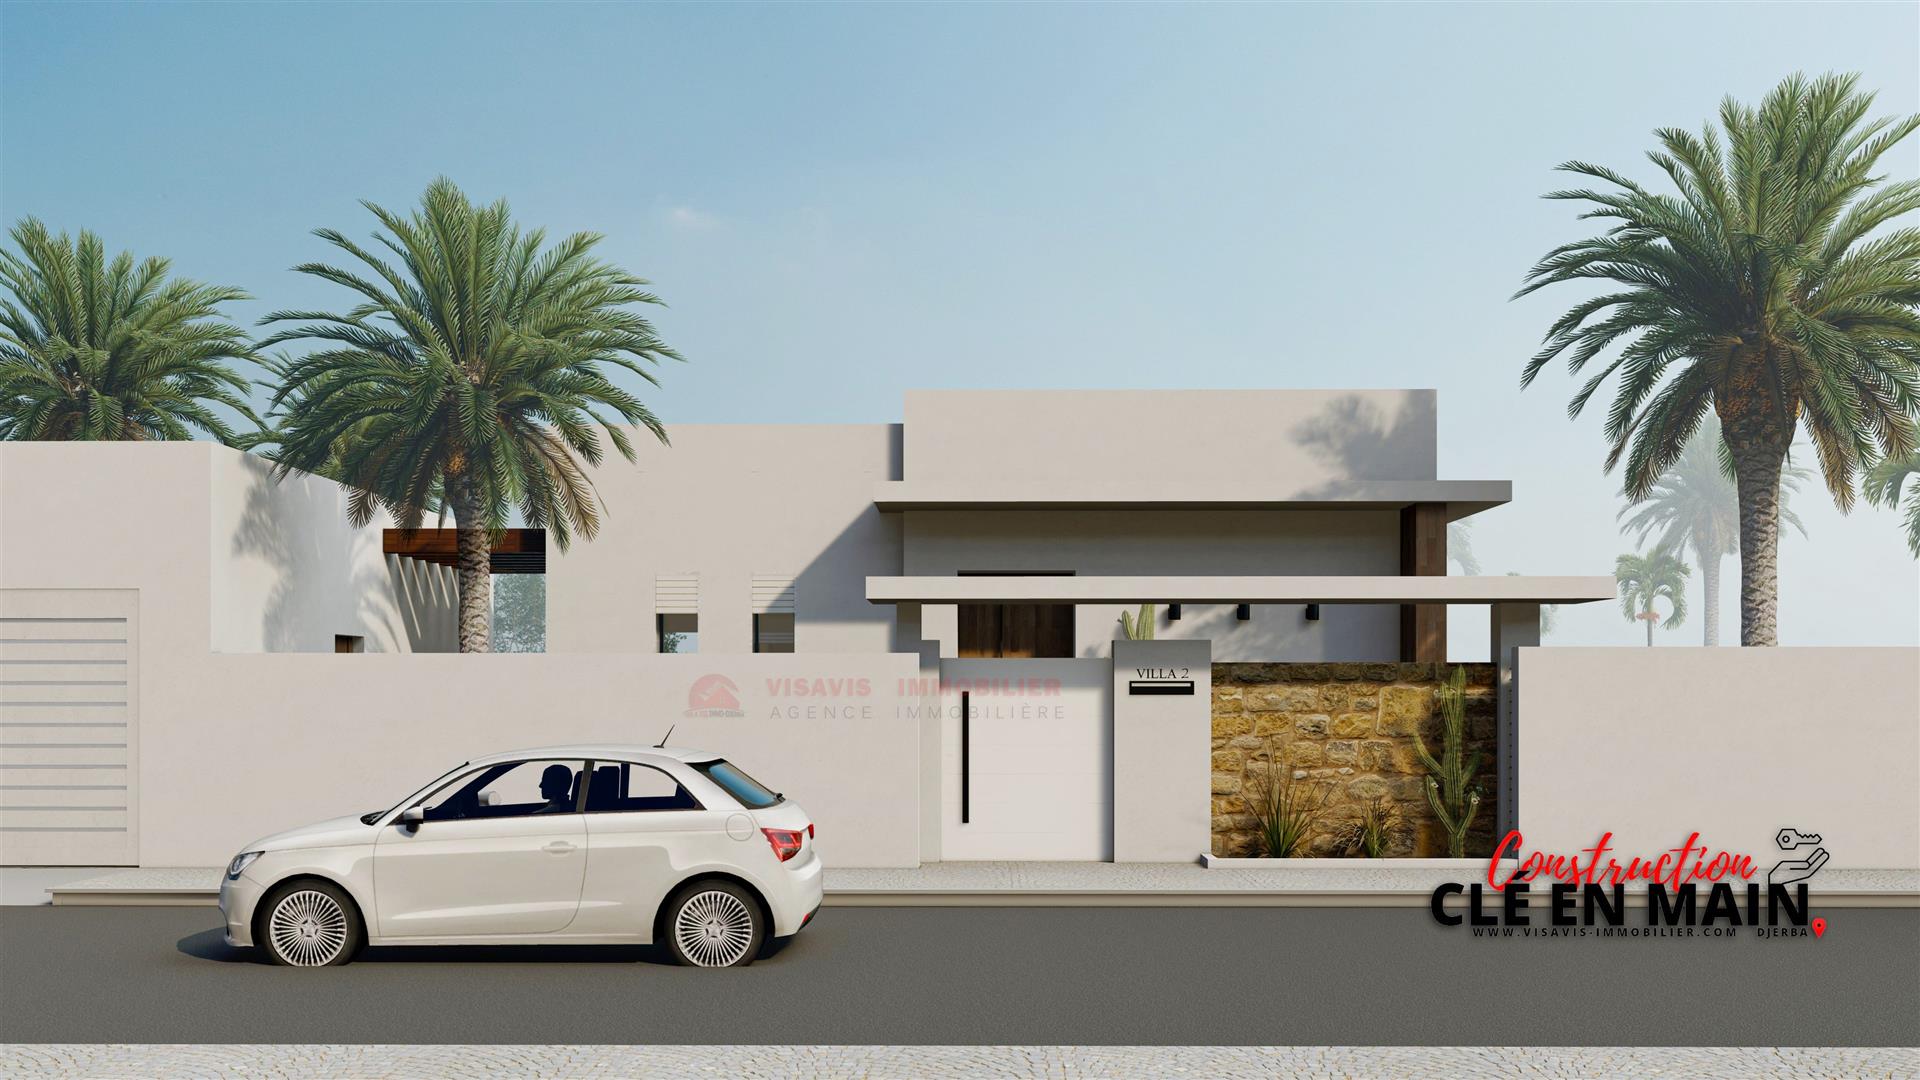 Immobilier neuf à Djerba Tunisie - Zone urbaine - titre bleu